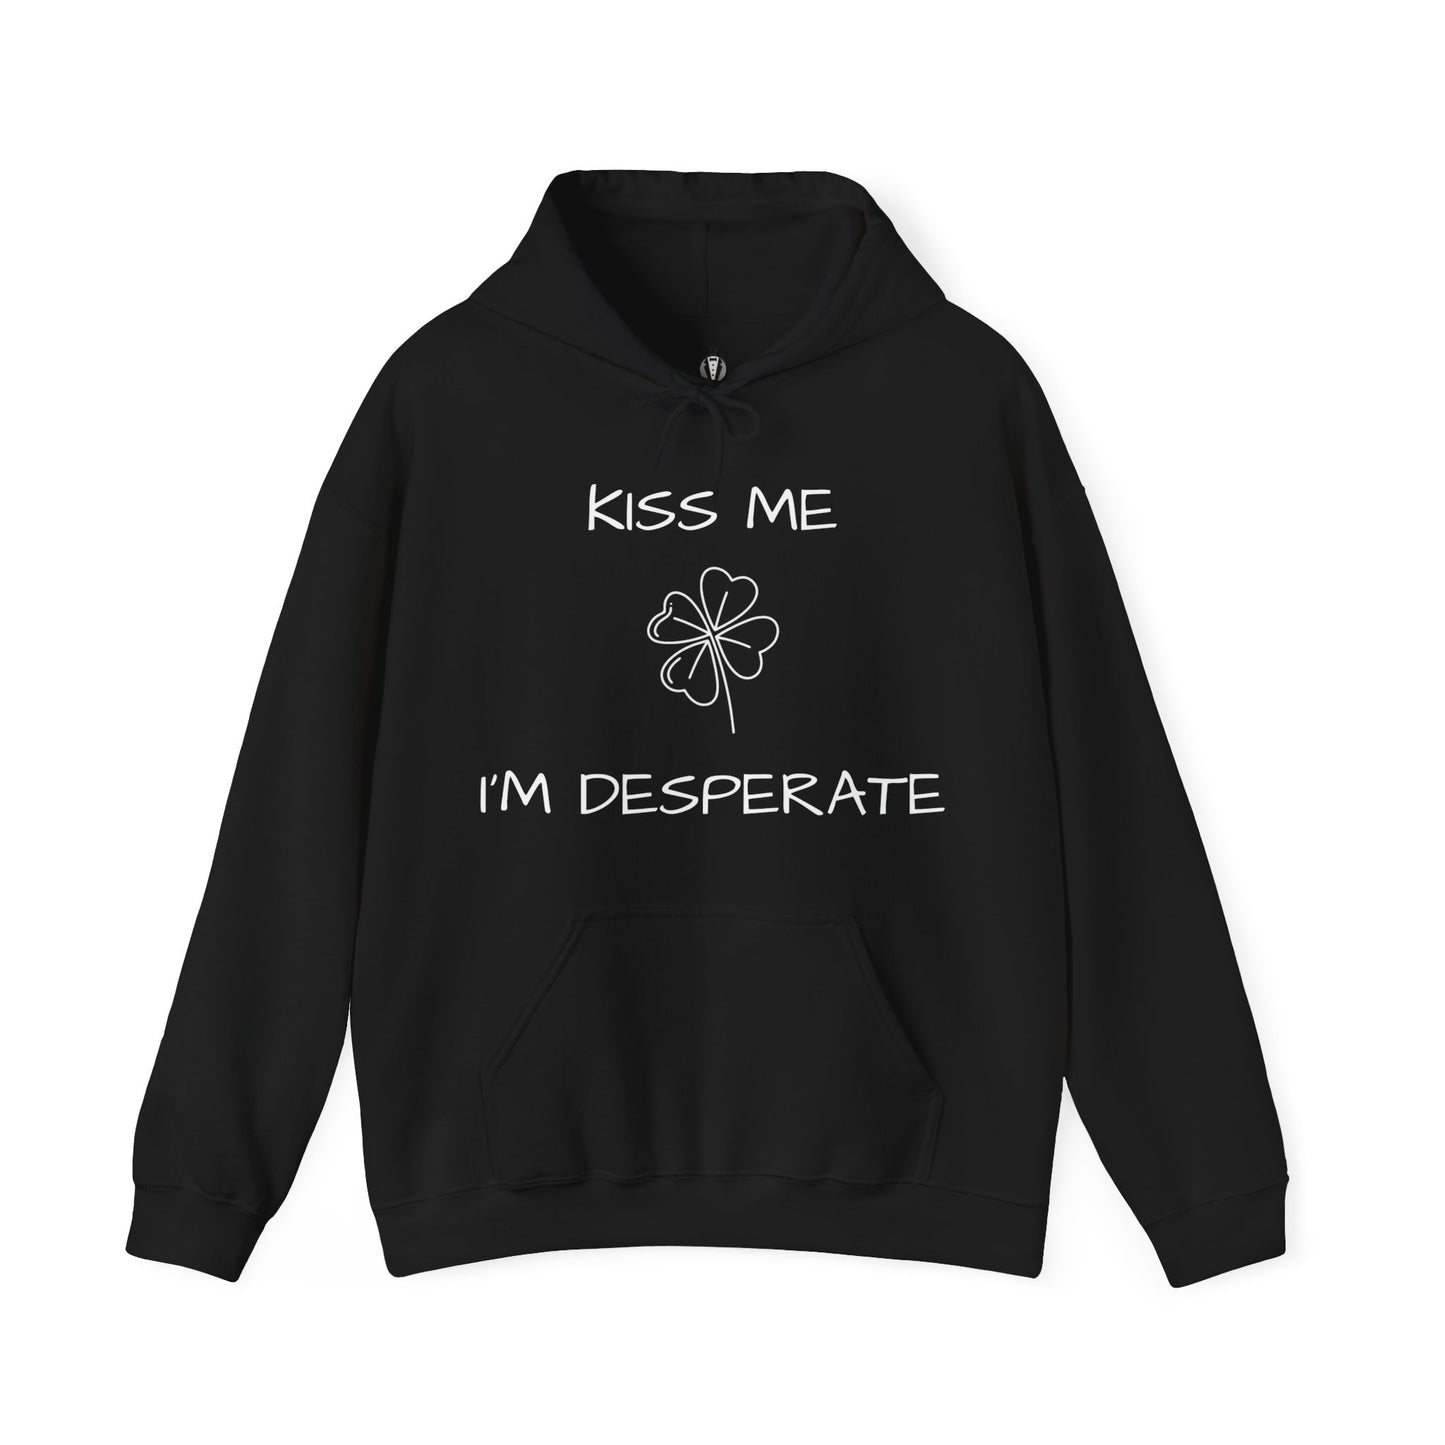 "Kiss me I'm desperate" - Hoodie